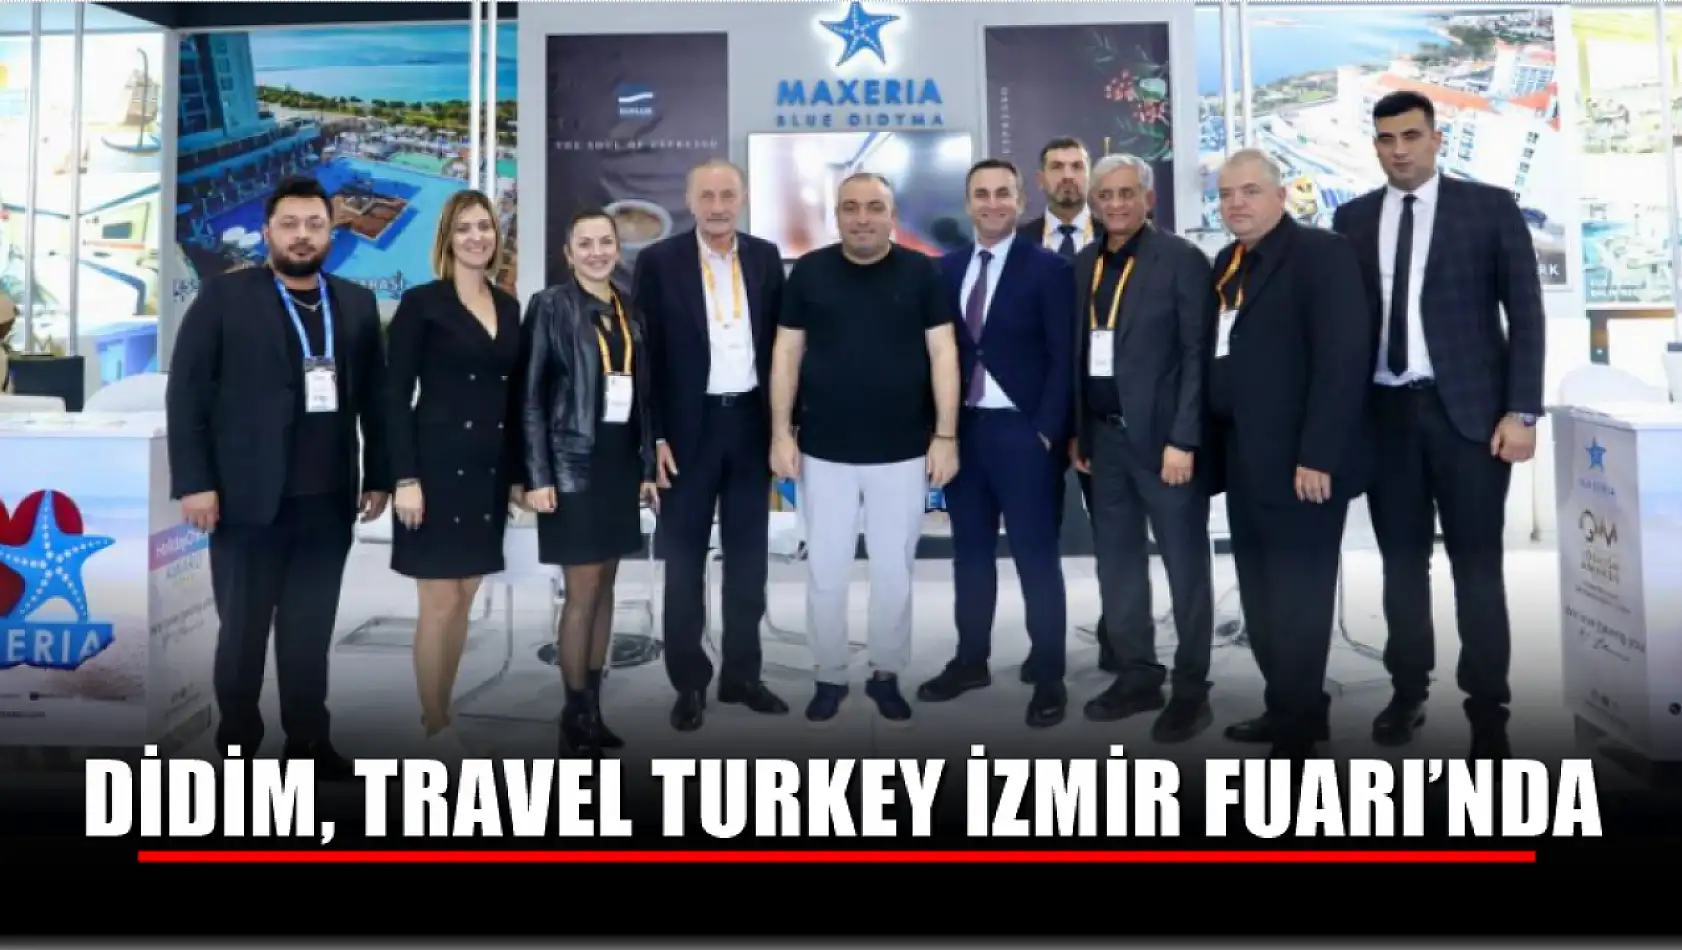 Didim, Travel Turkey İzmir Fuarı'nda